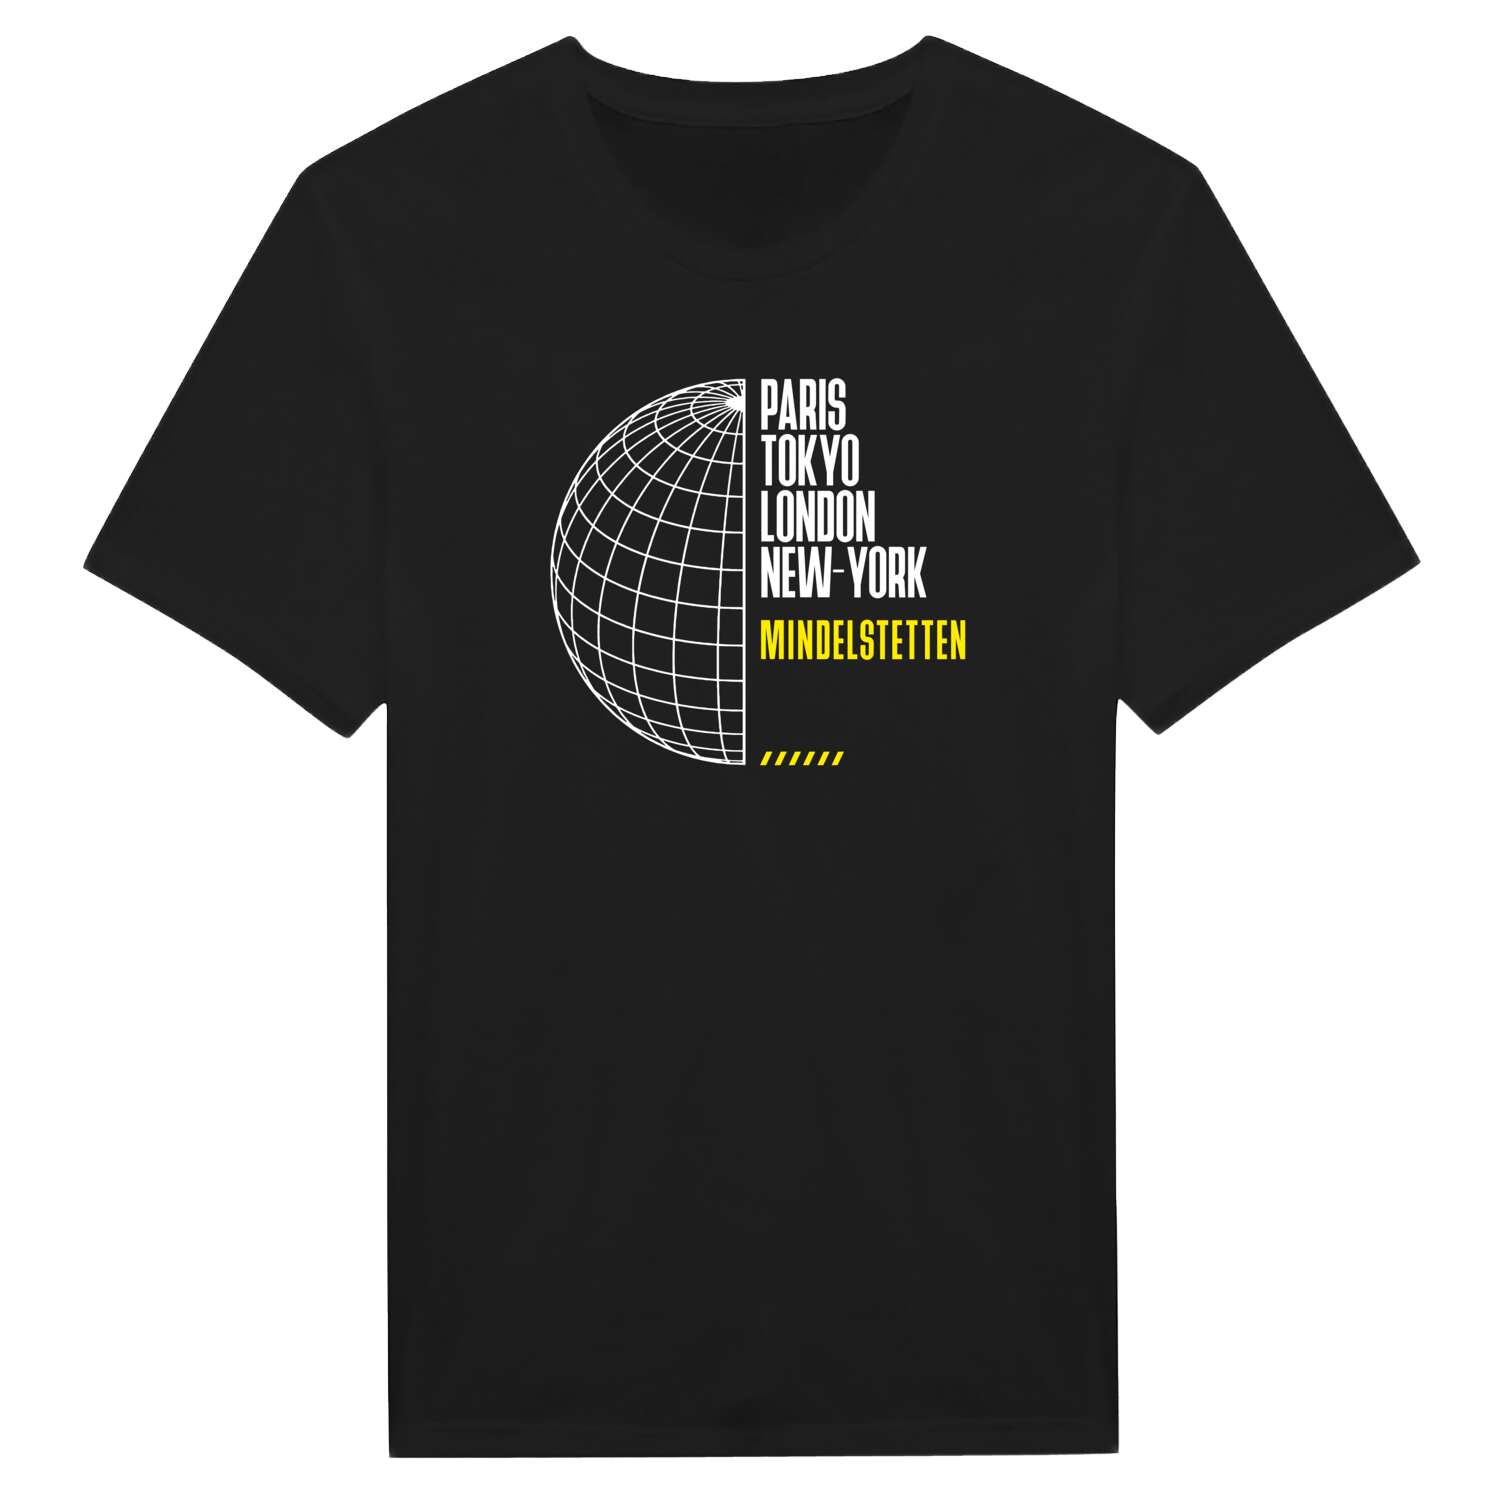 Mindelstetten T-Shirt »Paris Tokyo London«